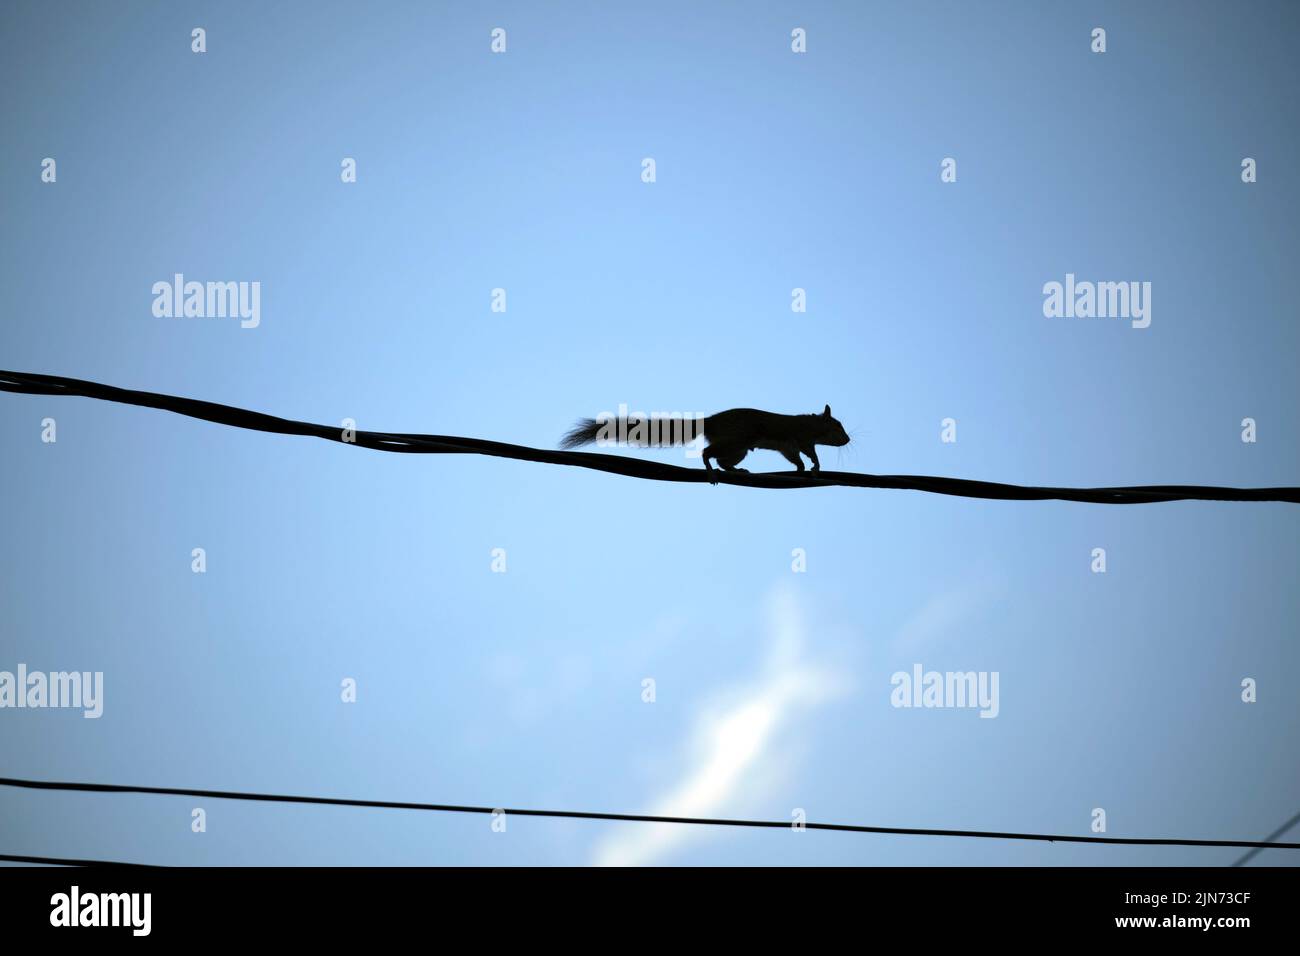 Silhouette sombre d'écureuil qui court le long de câbles électriques ou téléphoniques sur fond de ciel bleu clair Banque D'Images